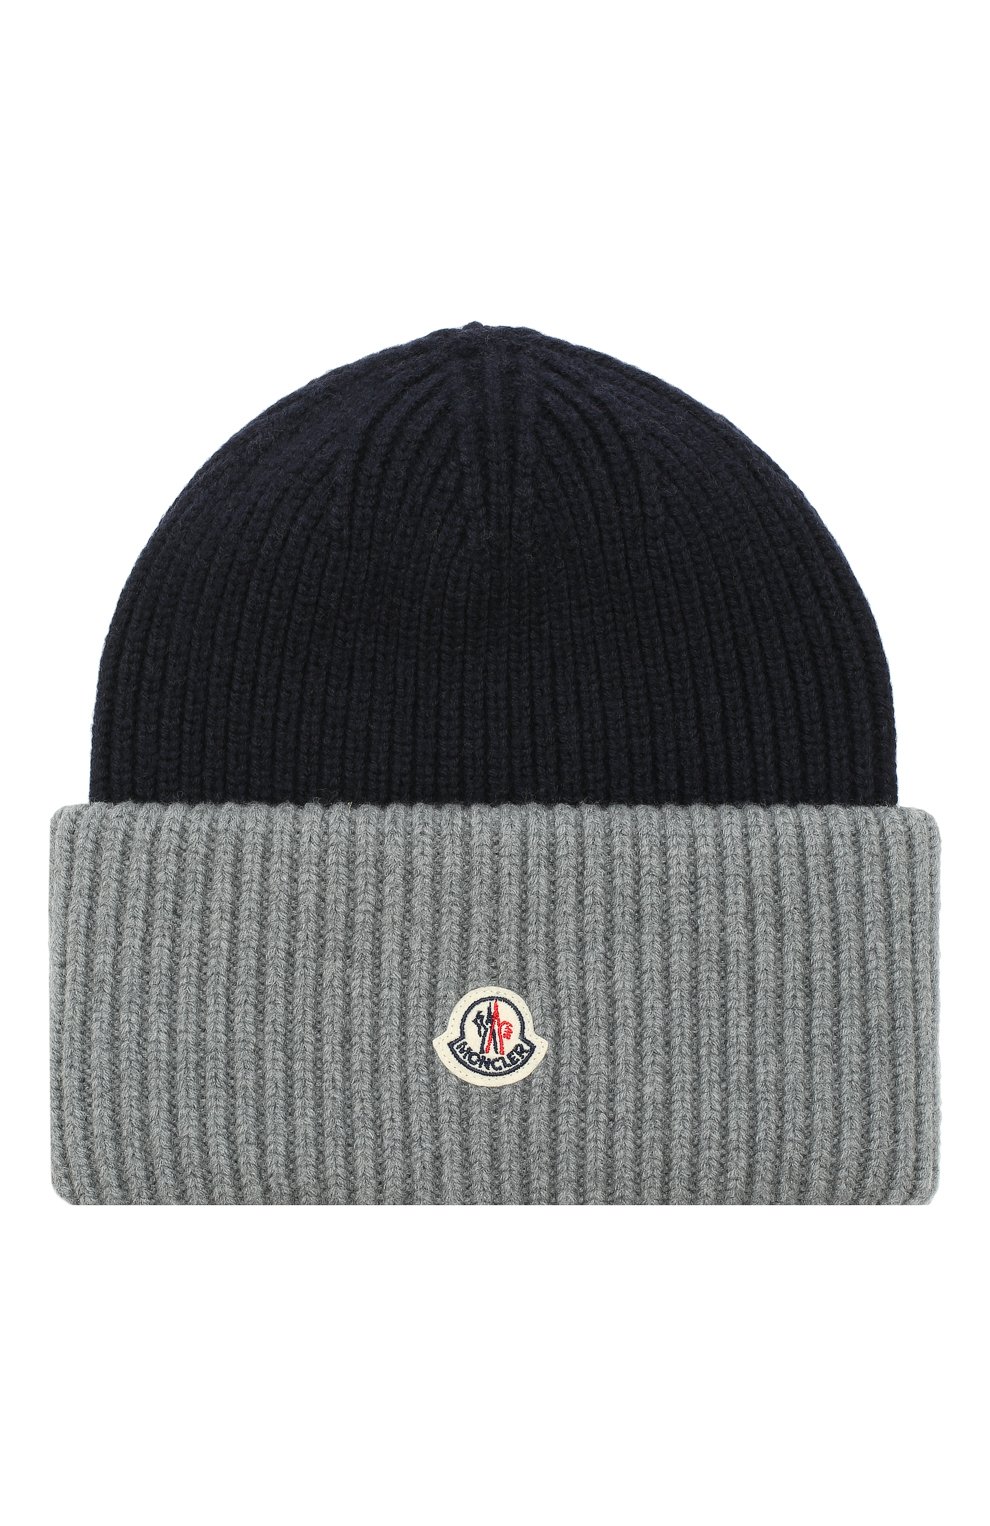 Мужская шерстяная шапка с логотипом бренда MONCLER темно-серого цвета, арт. D2-091-99214-00-969AK | Фото 1 (Материал: Текстиль, Шерсть; Кросс-КТ: Трикотаж)